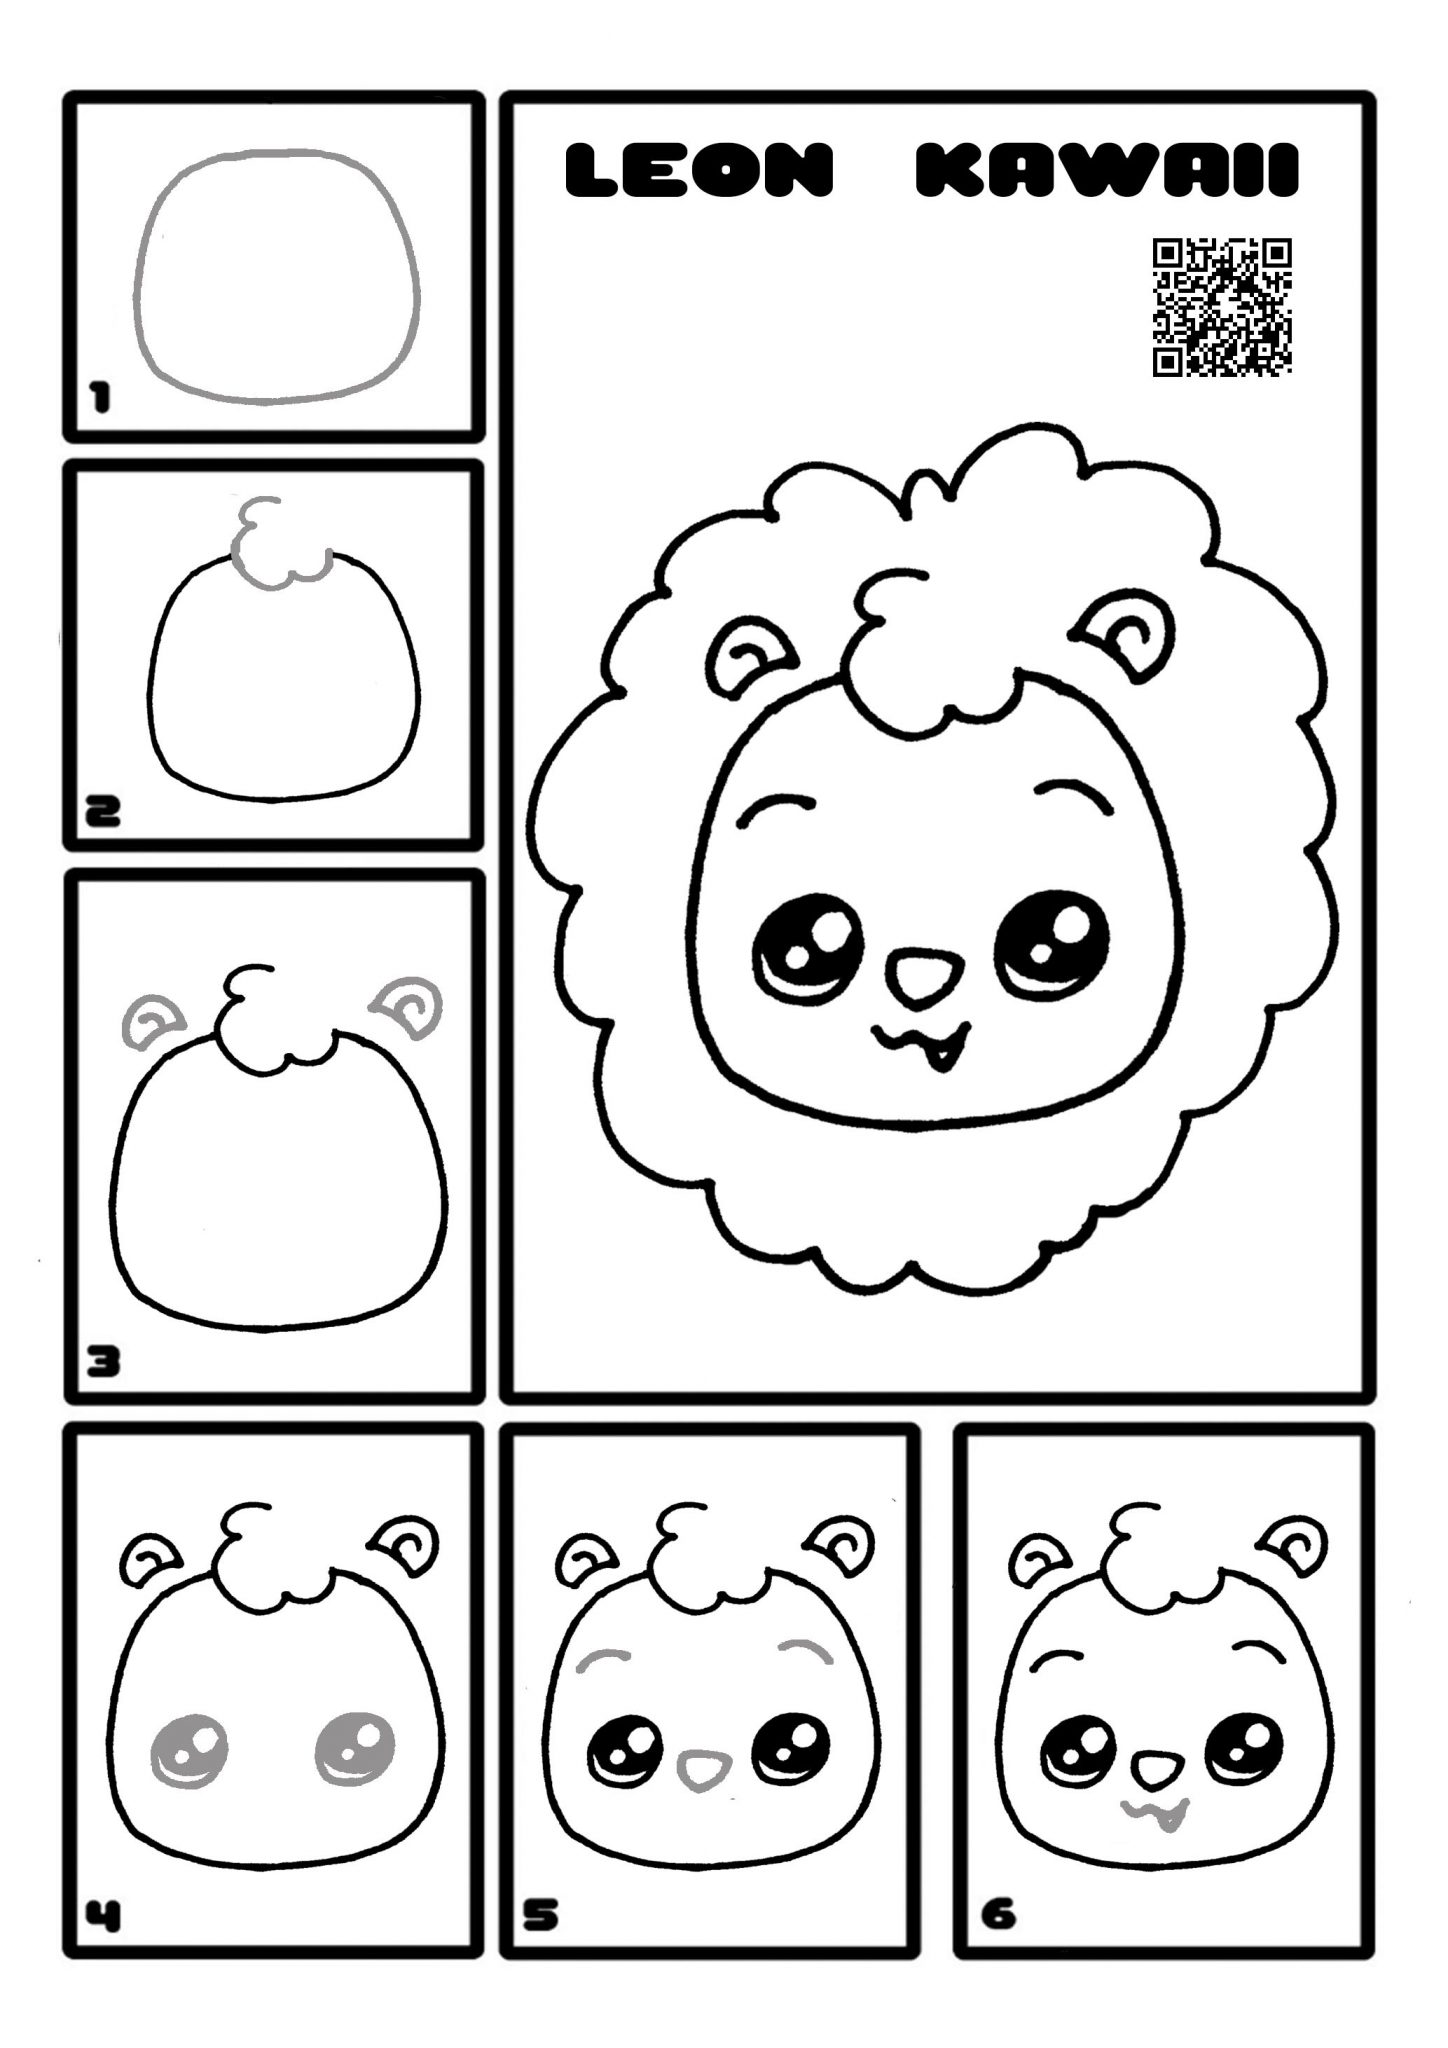 Como Dibujar Kawaii: Dibujar 101 Cosas Bonitas Rápida y Fácilmente - Libro  de Dibujo Paso a Paso - Para Niñas y Niños (Spanish Edition)